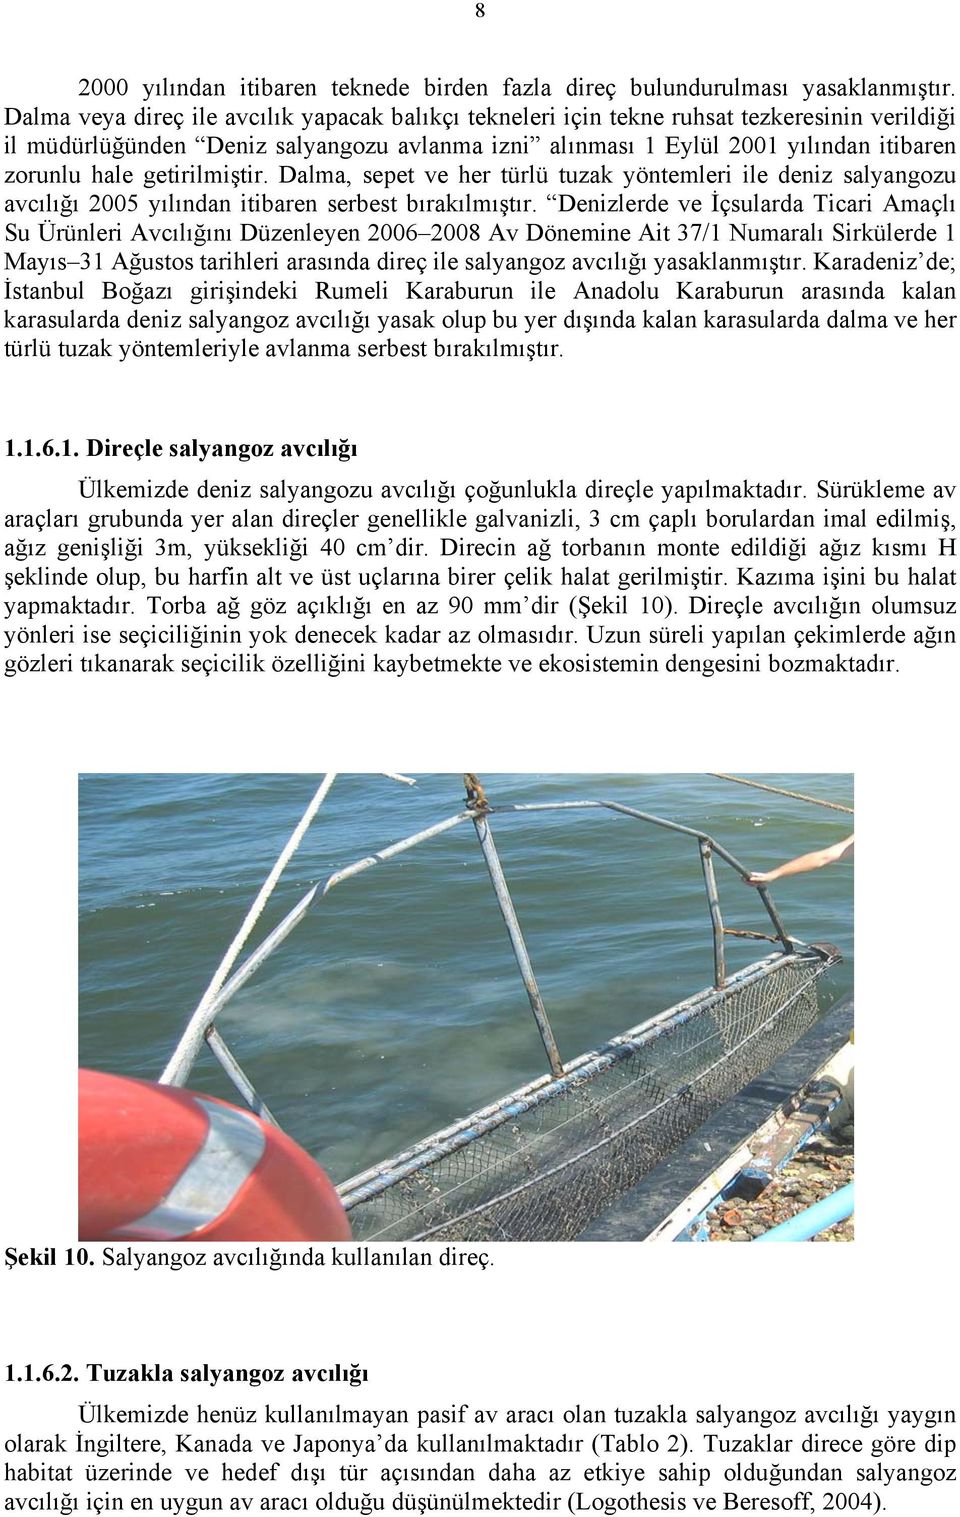 getirilmiştir. Dalma, sepet ve her türlü tuzak yöntemleri ile deniz salyangozu avcılığı 25 yılından itibaren serbest bırakılmıştır.